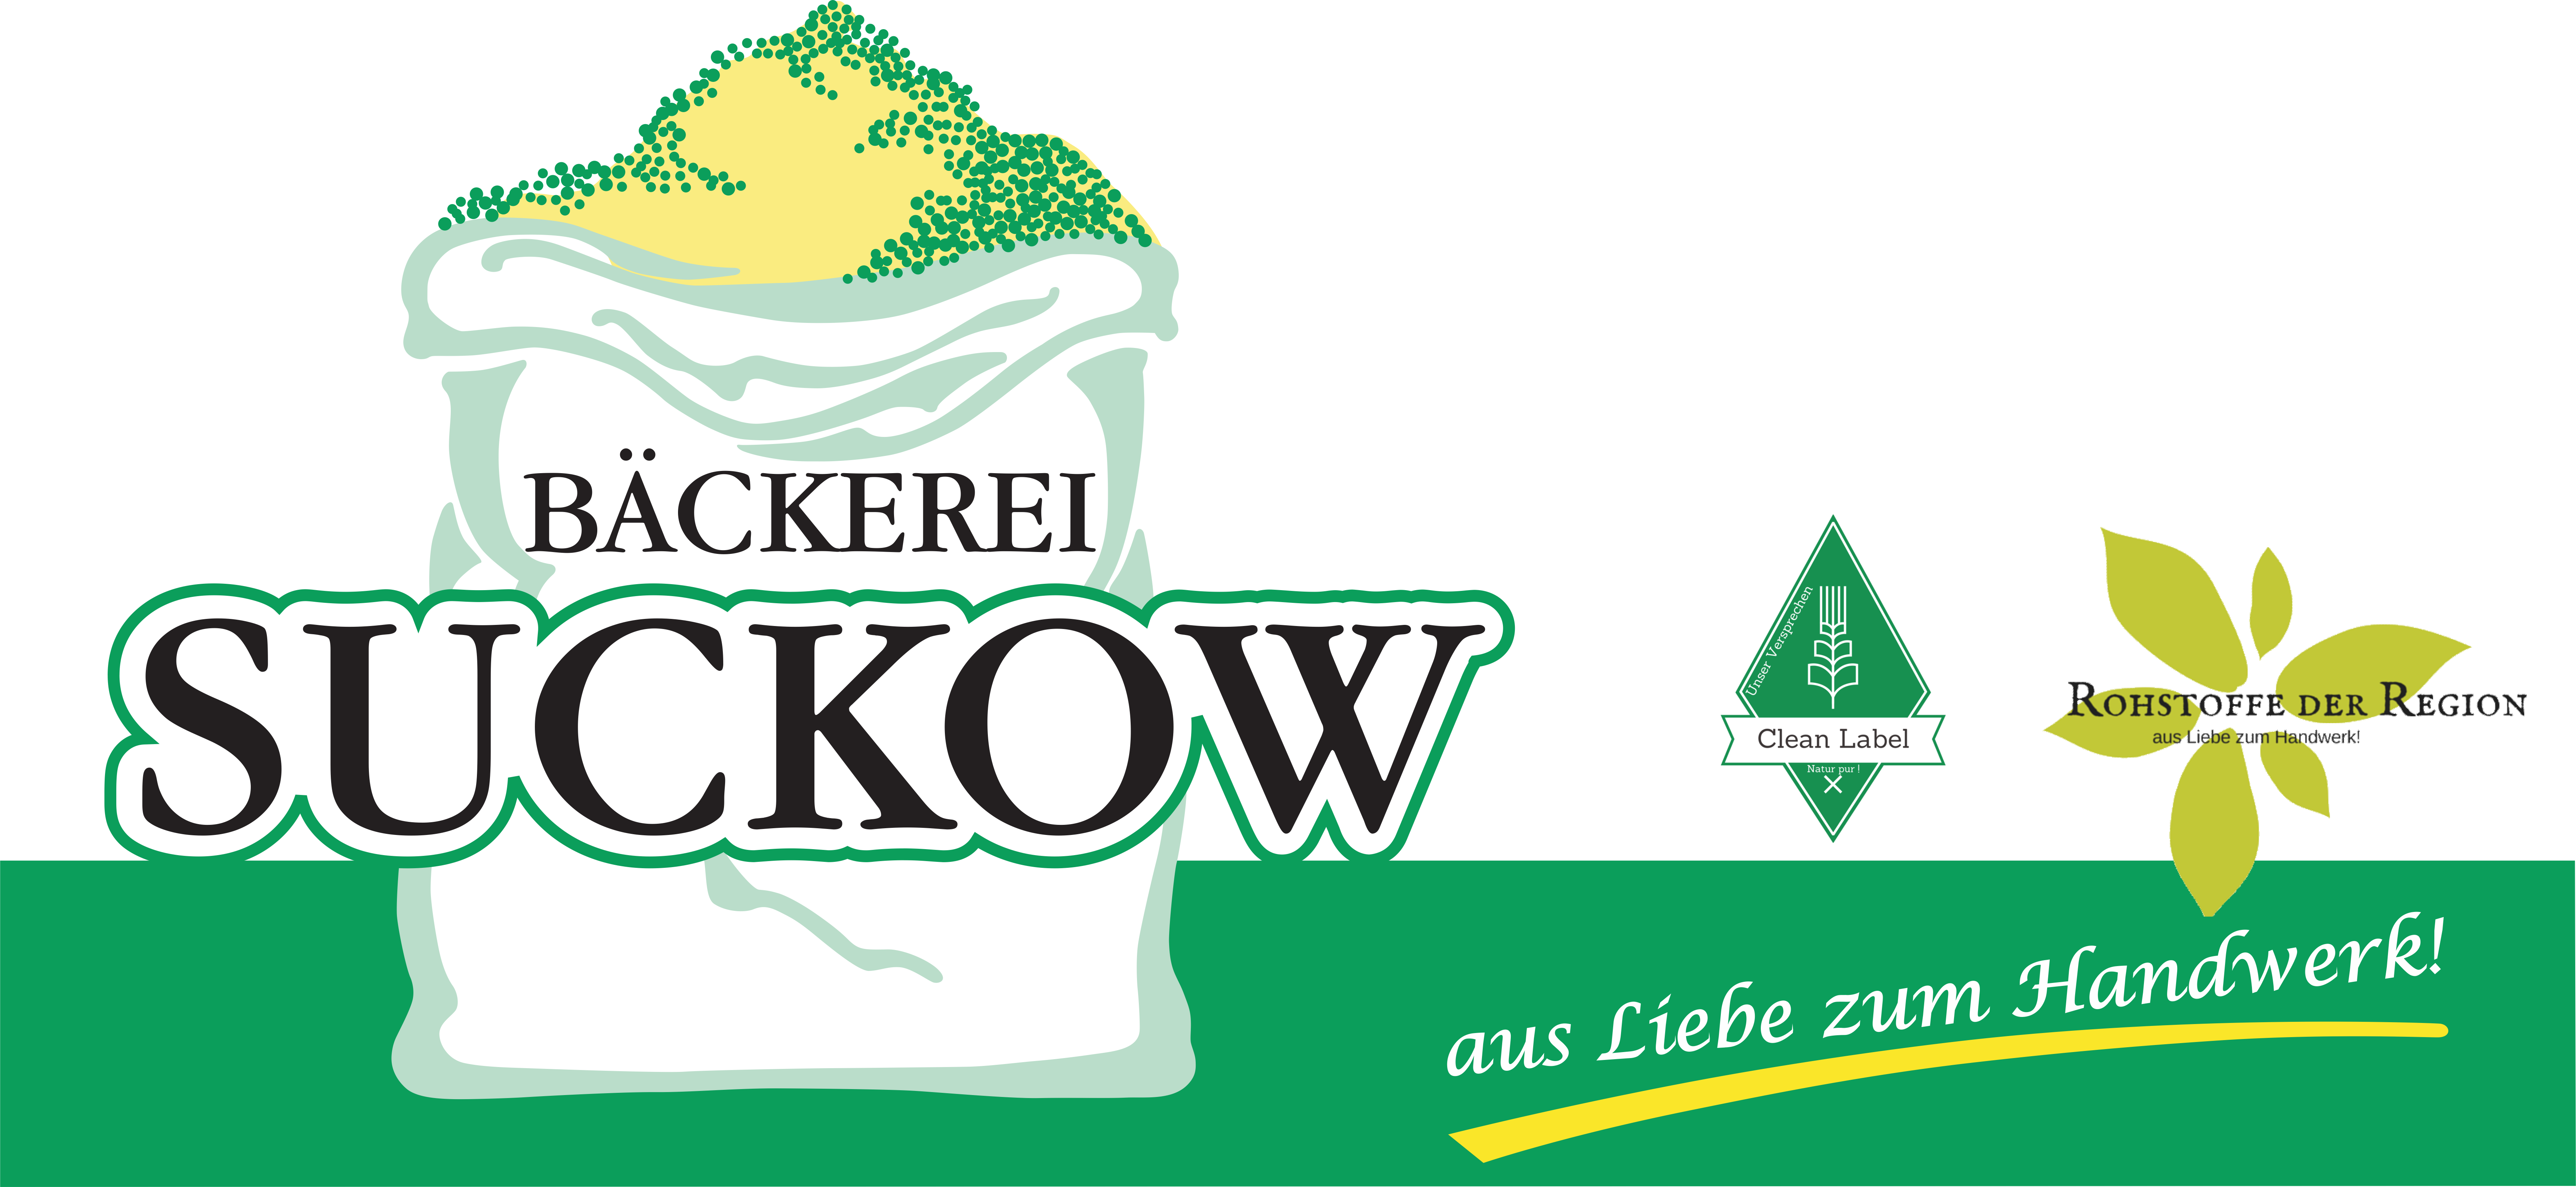 Bäckerei Suckow GmbH